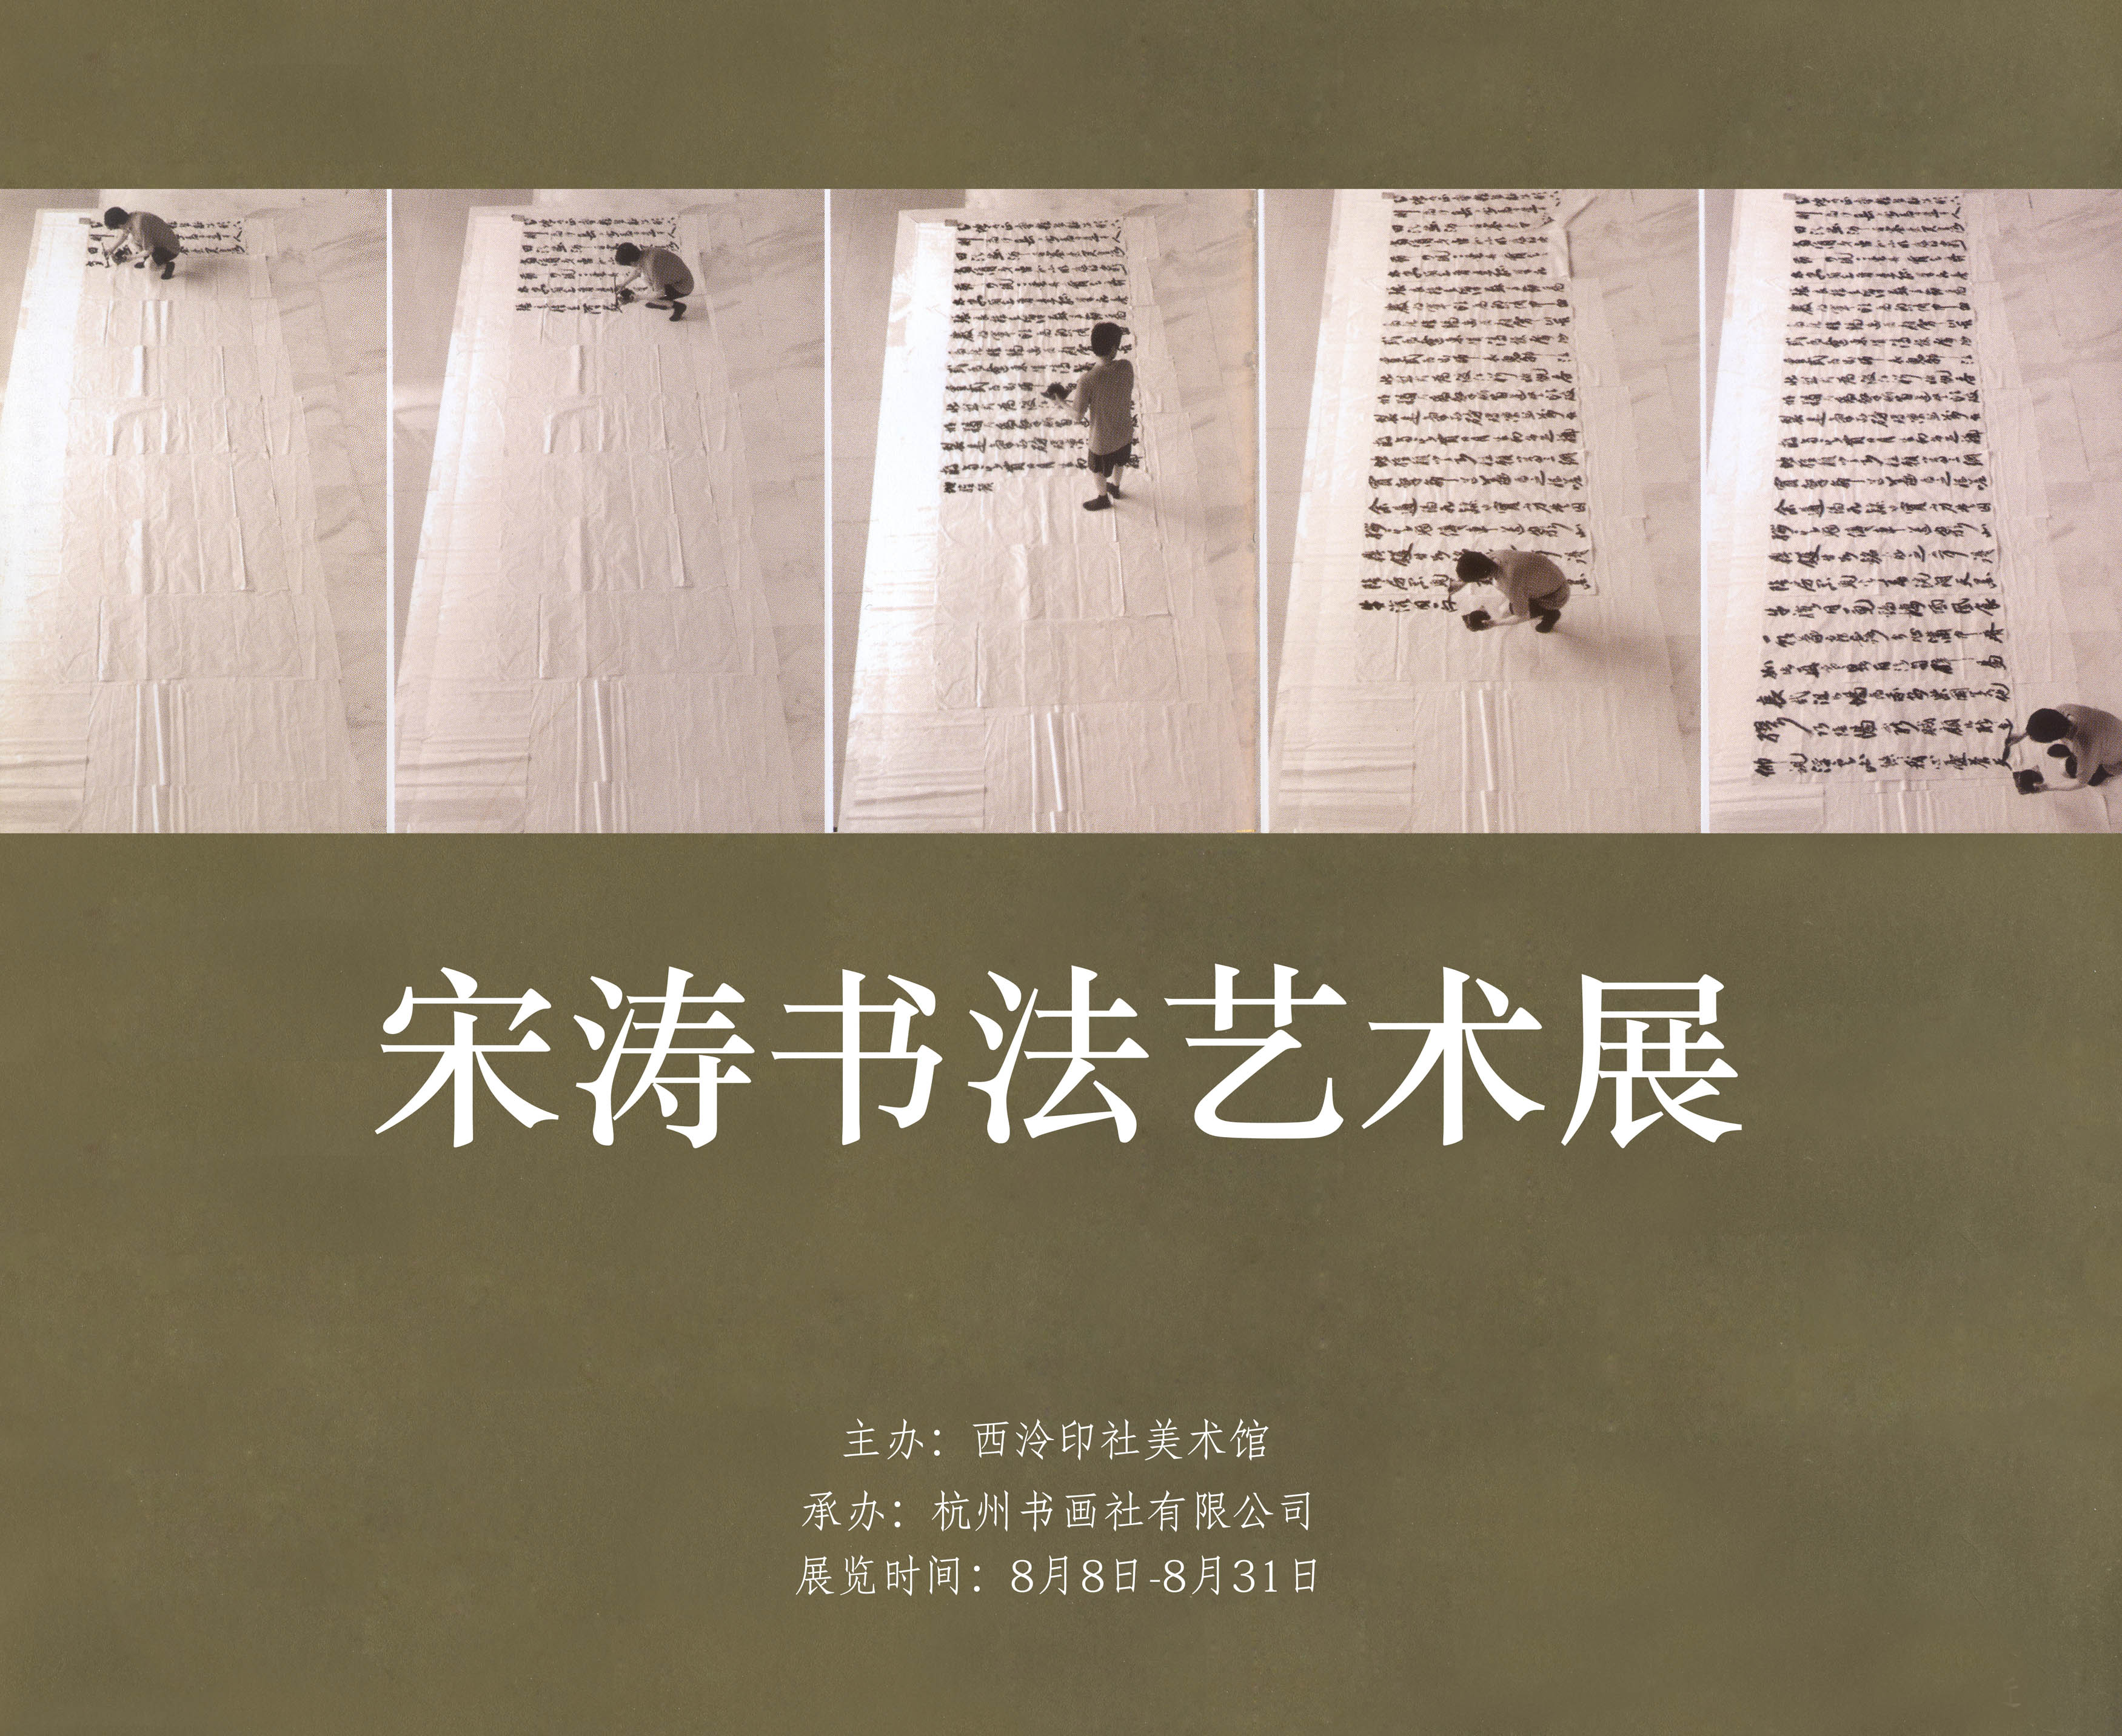 “宋涛书法艺术展”将在西泠印社美术馆展出